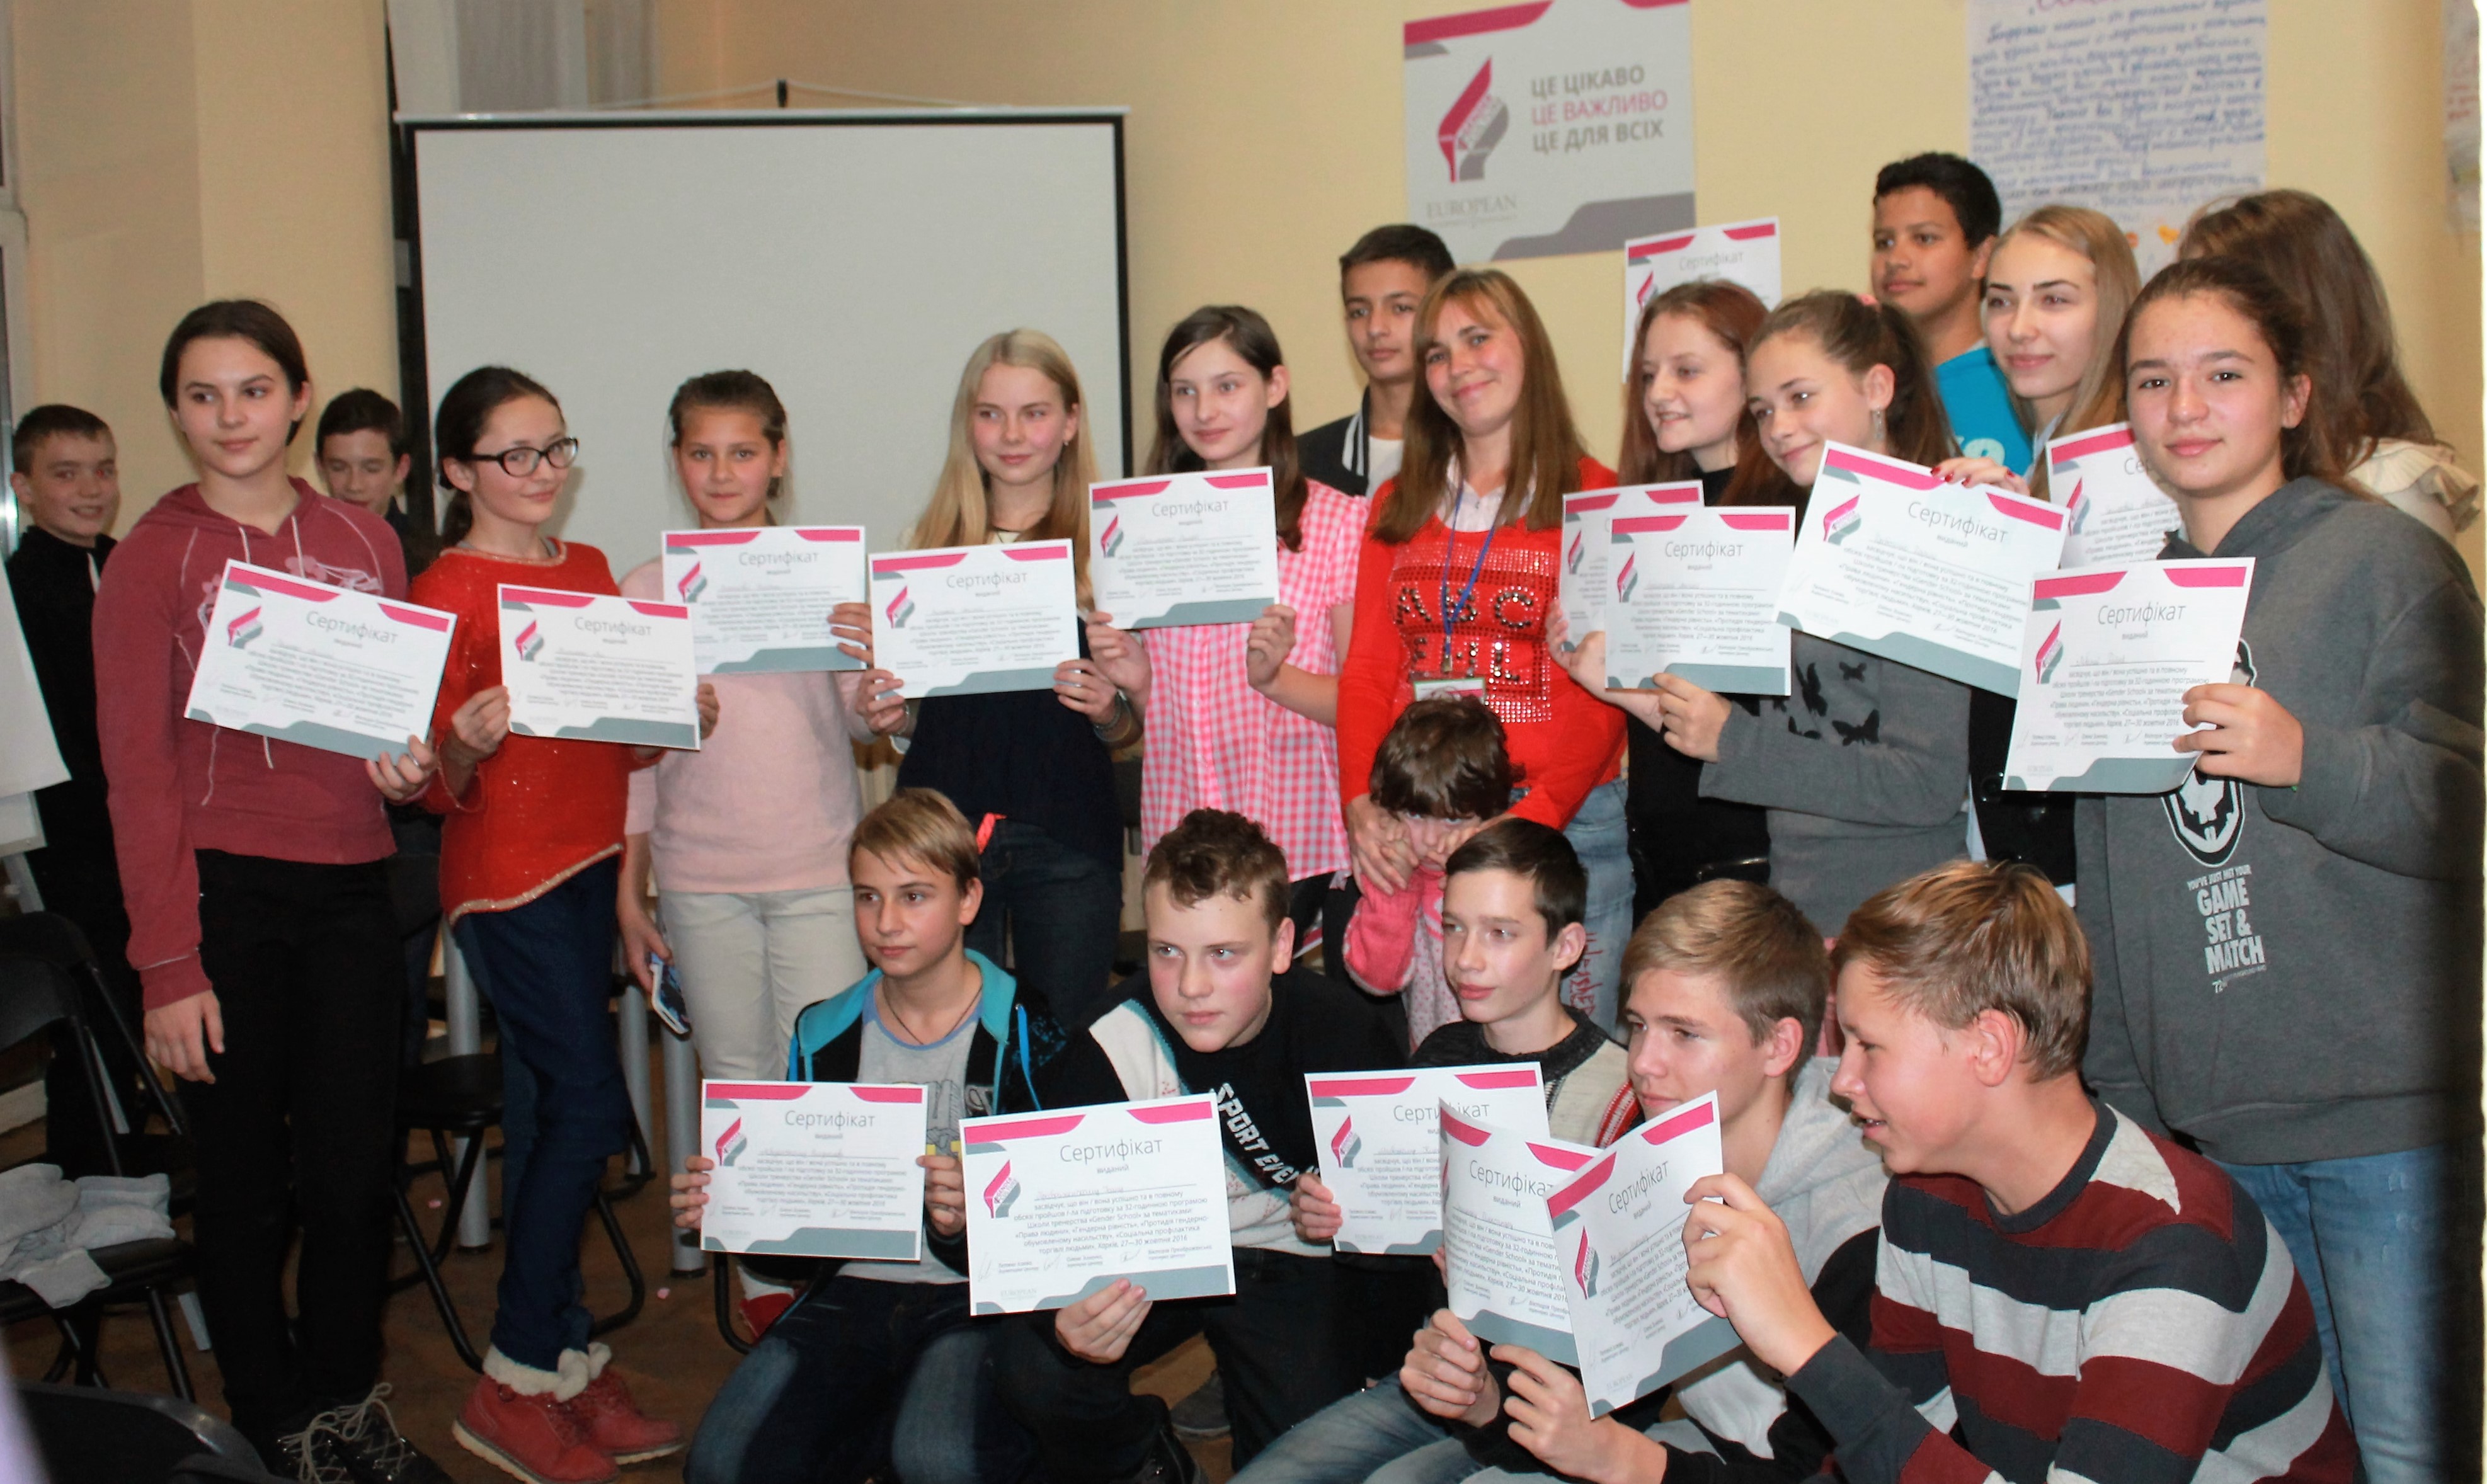 Харківська «Gender school» випустила перших старшокласників-тренерів